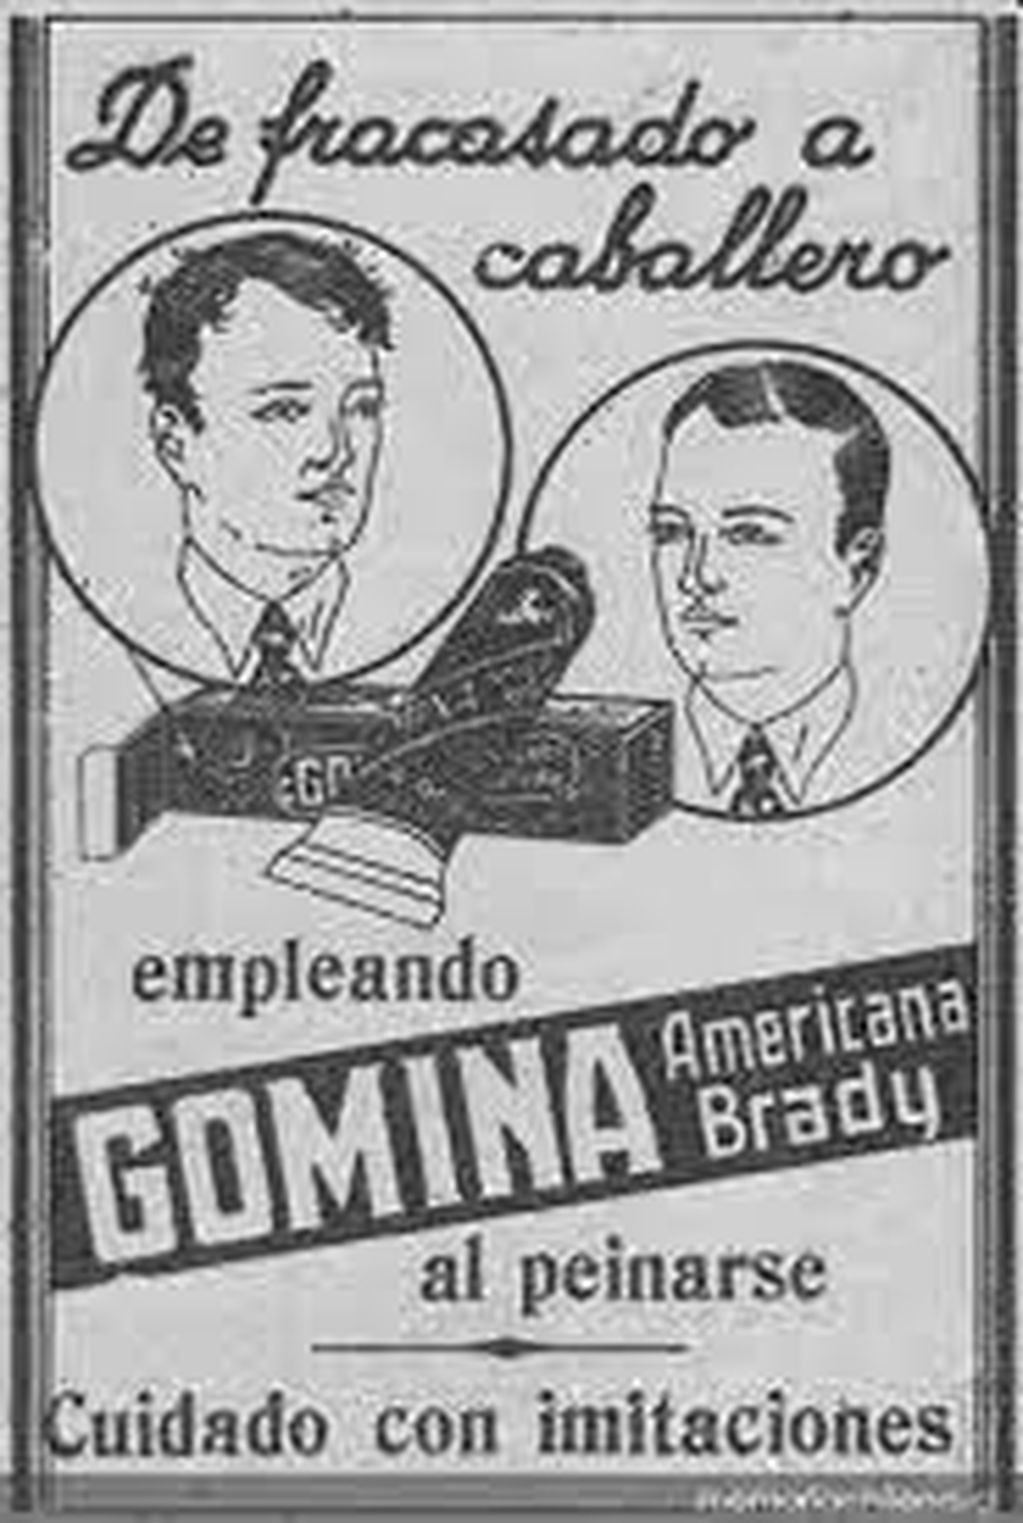 Publicidad gráfica de Gomina. Imagen: web